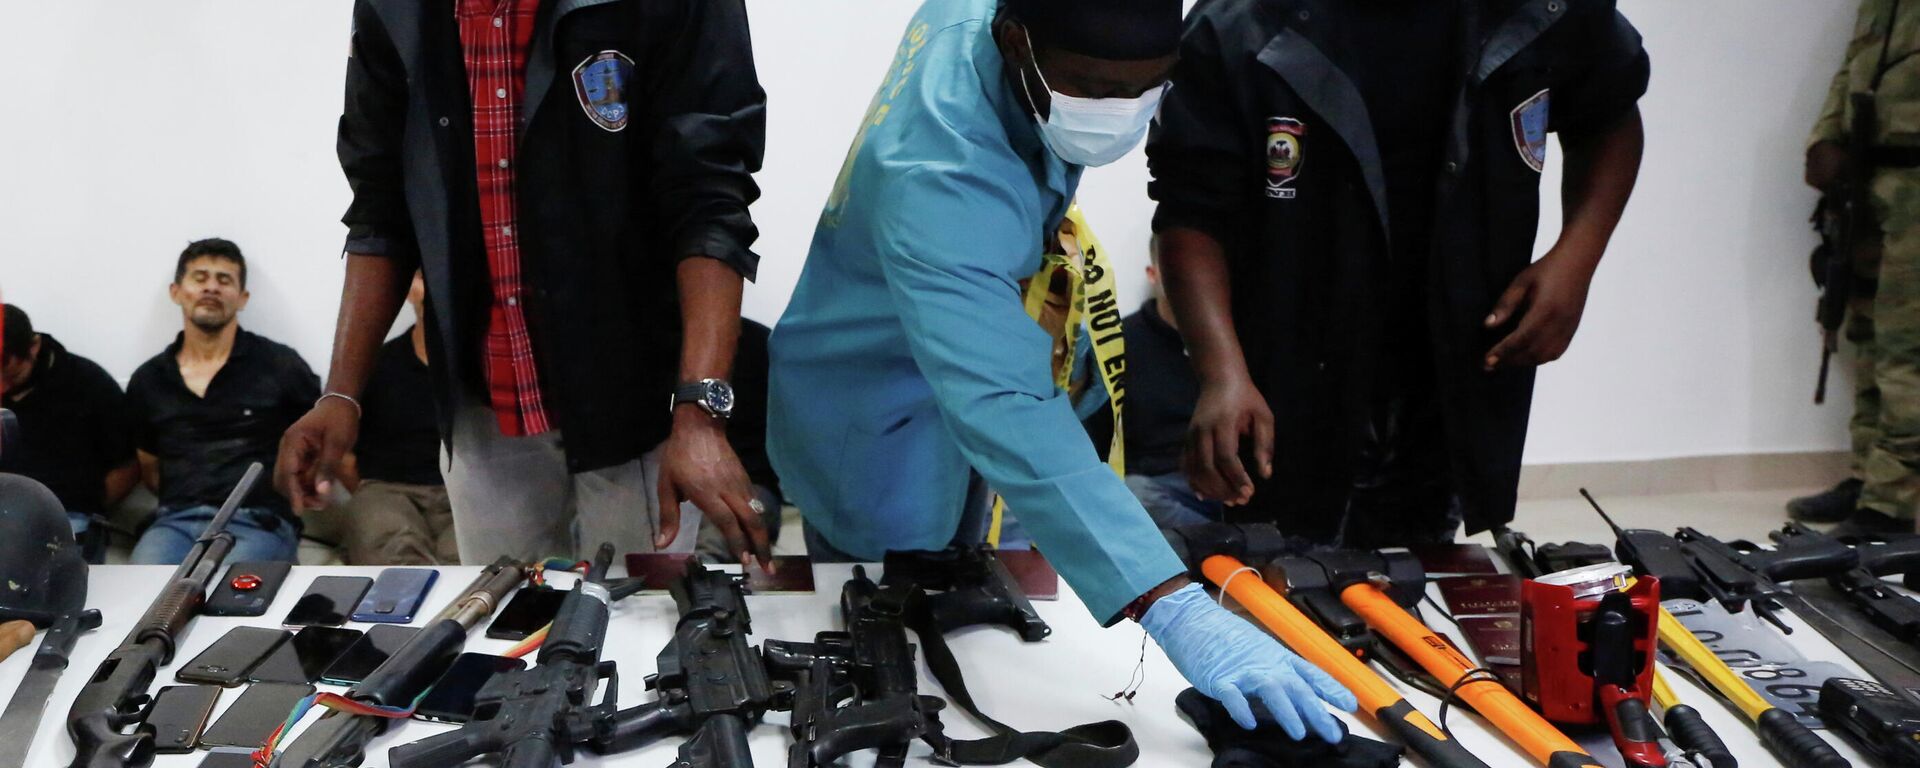 Armas incautadas a los detenidos cómplices del asesinato del presidente haitiano, Jovenel Moise - Sputnik Mundo, 1920, 09.07.2021